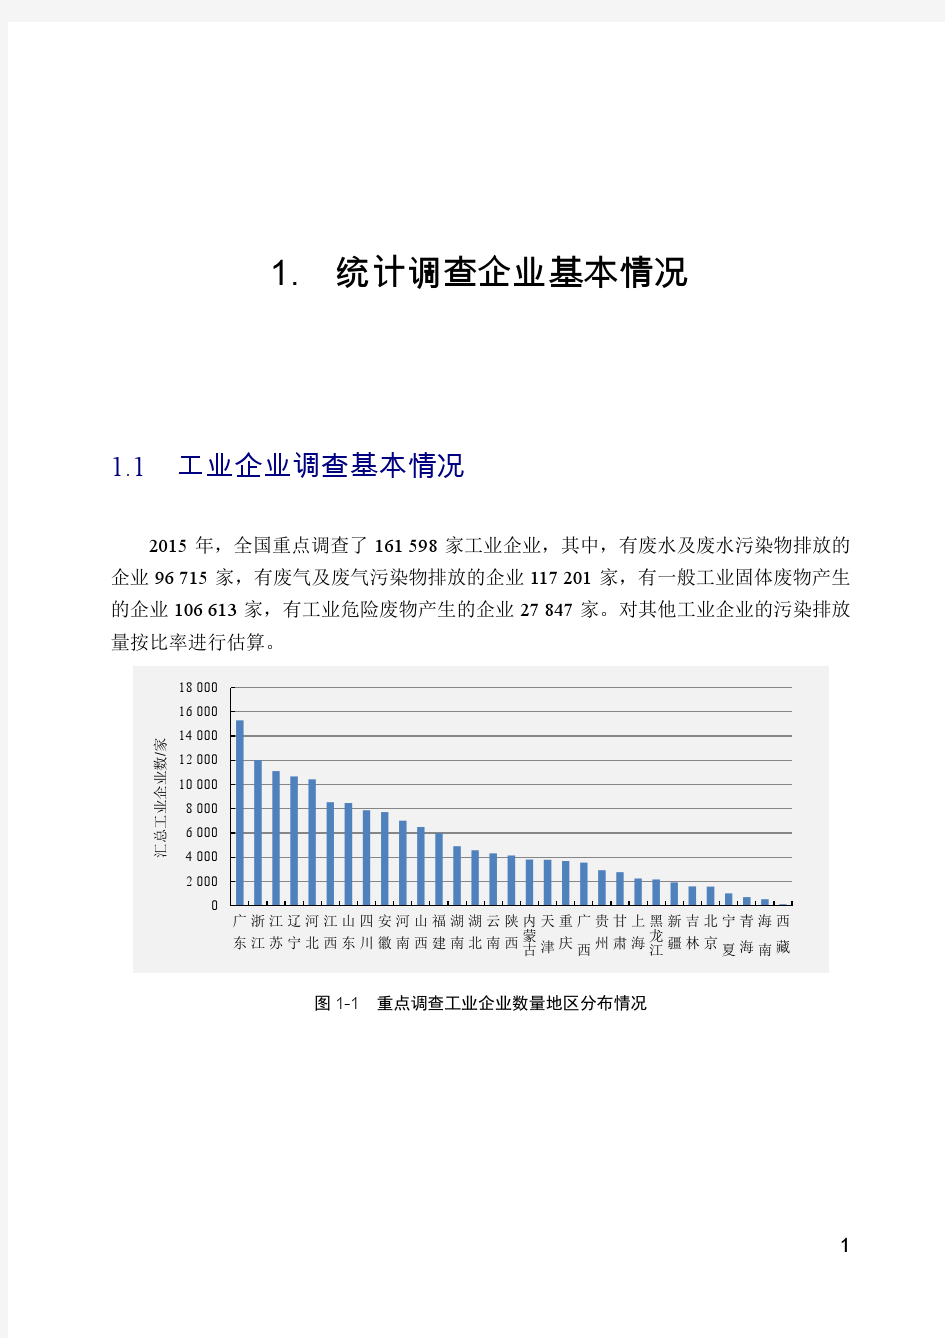 中国环境统计年报(2015)